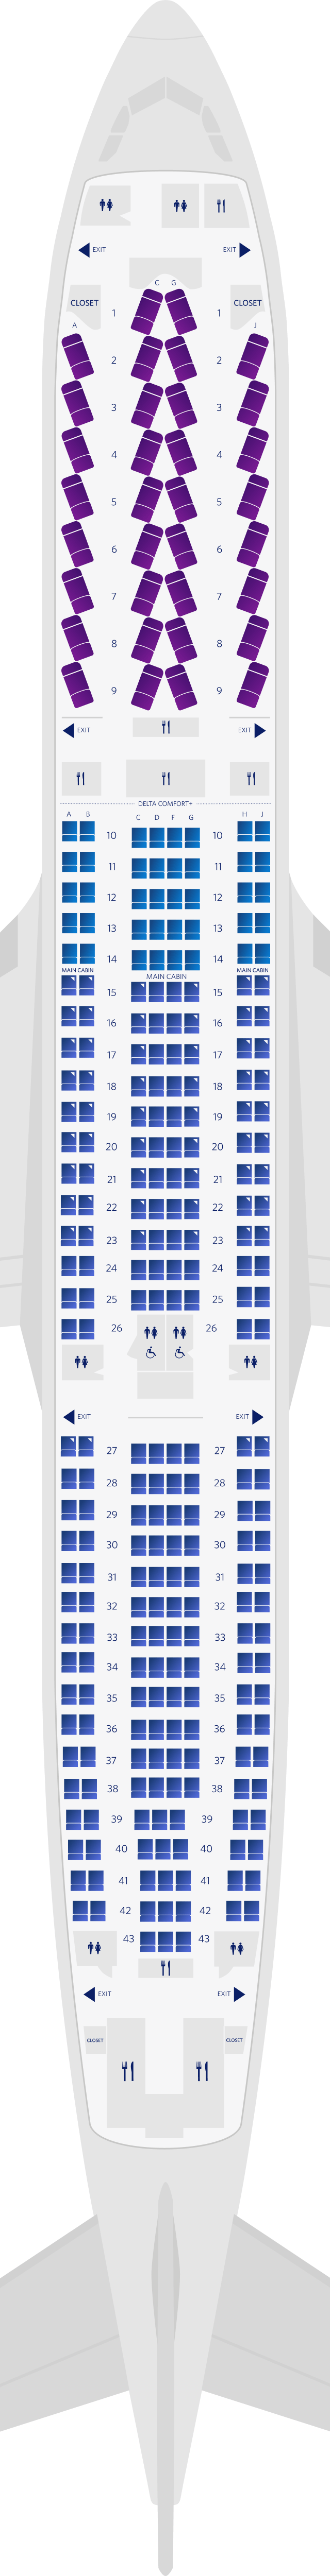 Mapa de assentos do Airbus A300-300 com 3 cabines (333)